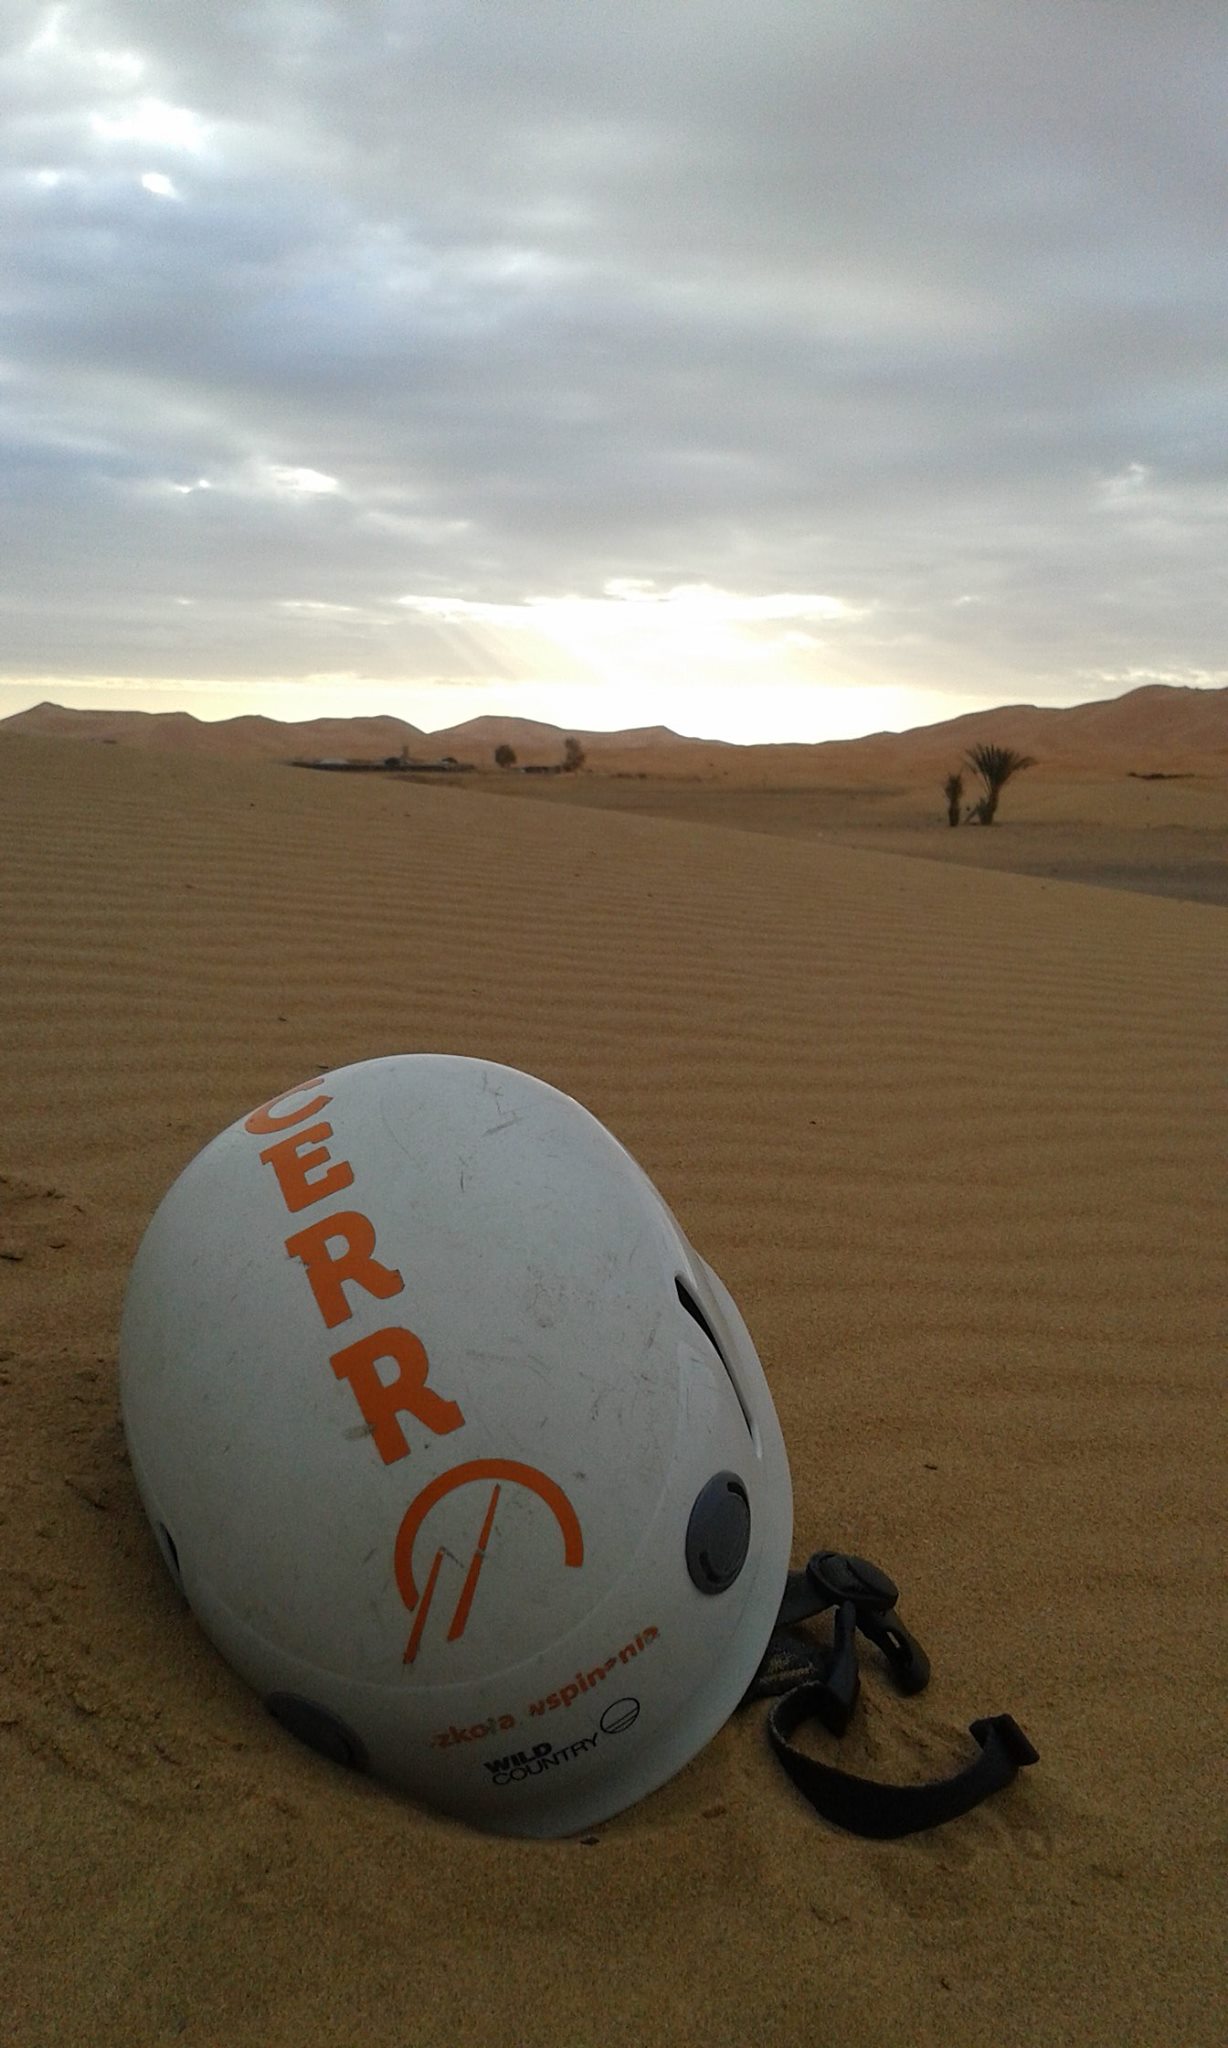 Maroko Sahara pustynna przygoda na obozie wspinaczkowym wTodrze Szkola Wspinaia Cerro